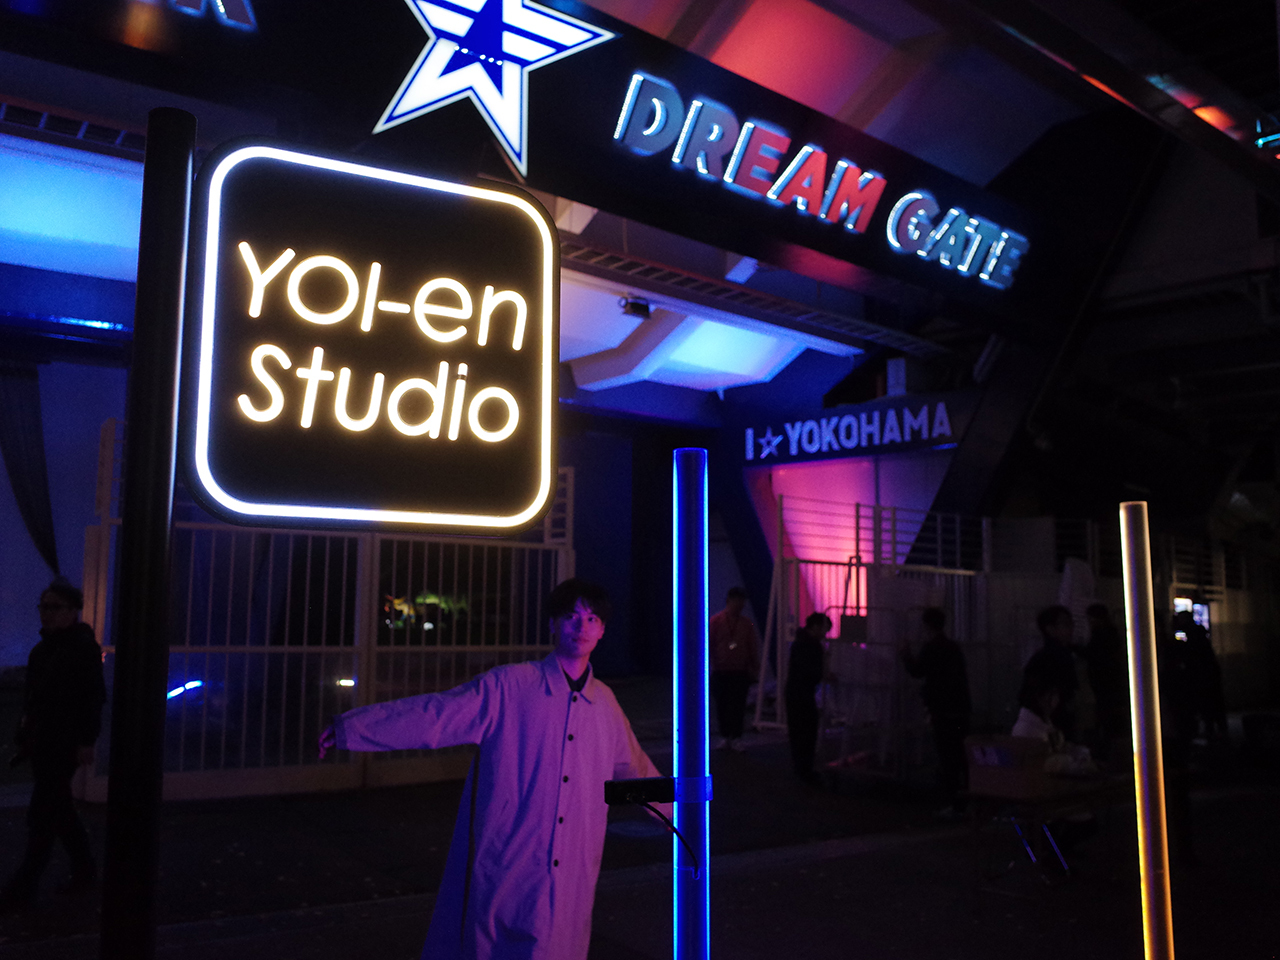 「ドリームゲート」前に設置した「YOI-en Studio」